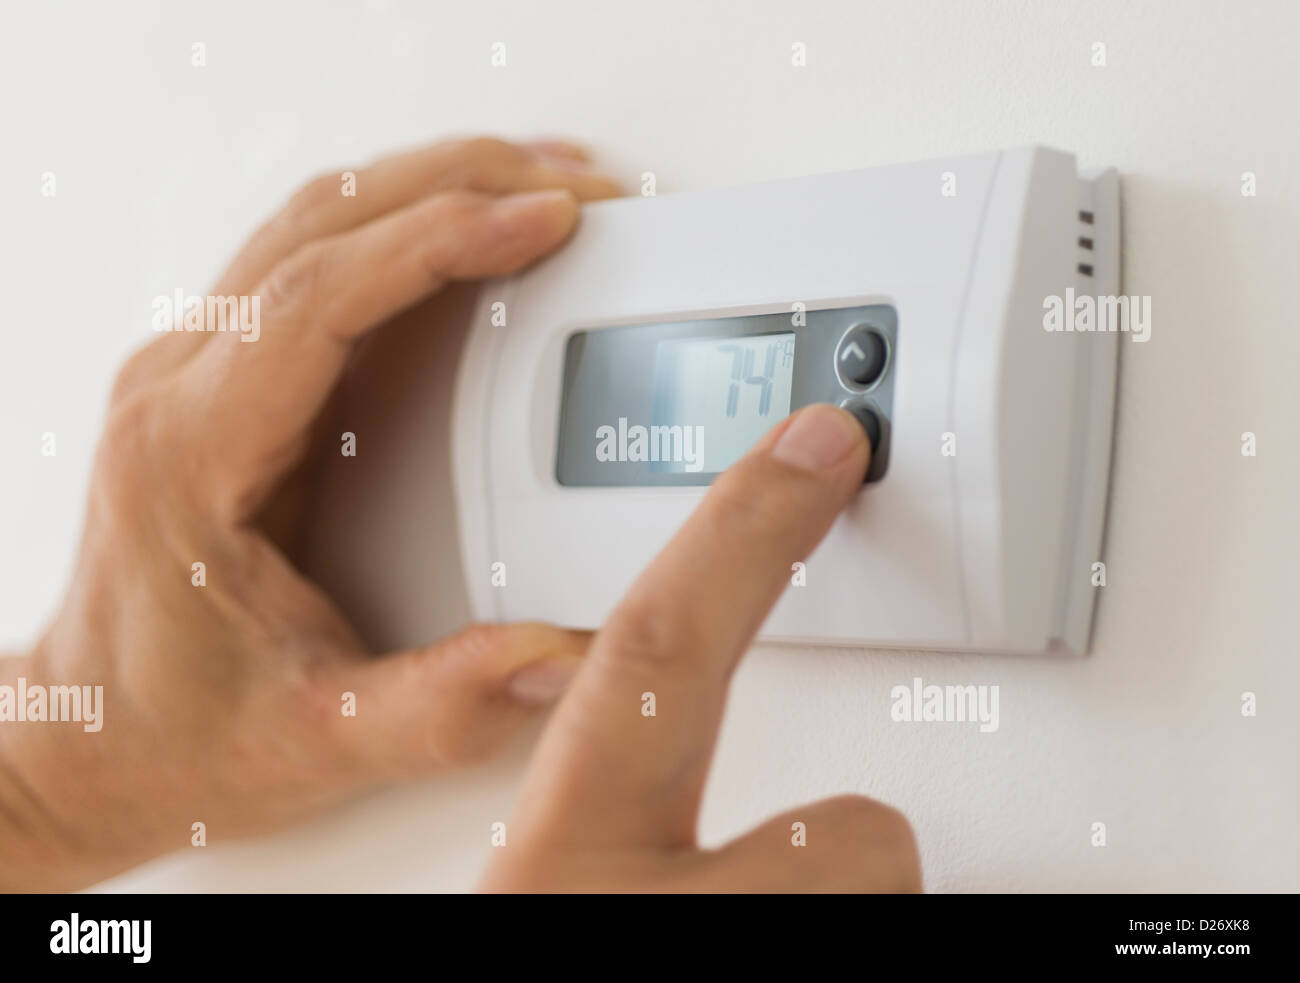 Stati Uniti d'America, New Jersey, Jersey City, mano modificando le impostazioni sul termostato dell'aria condizionata Foto Stock